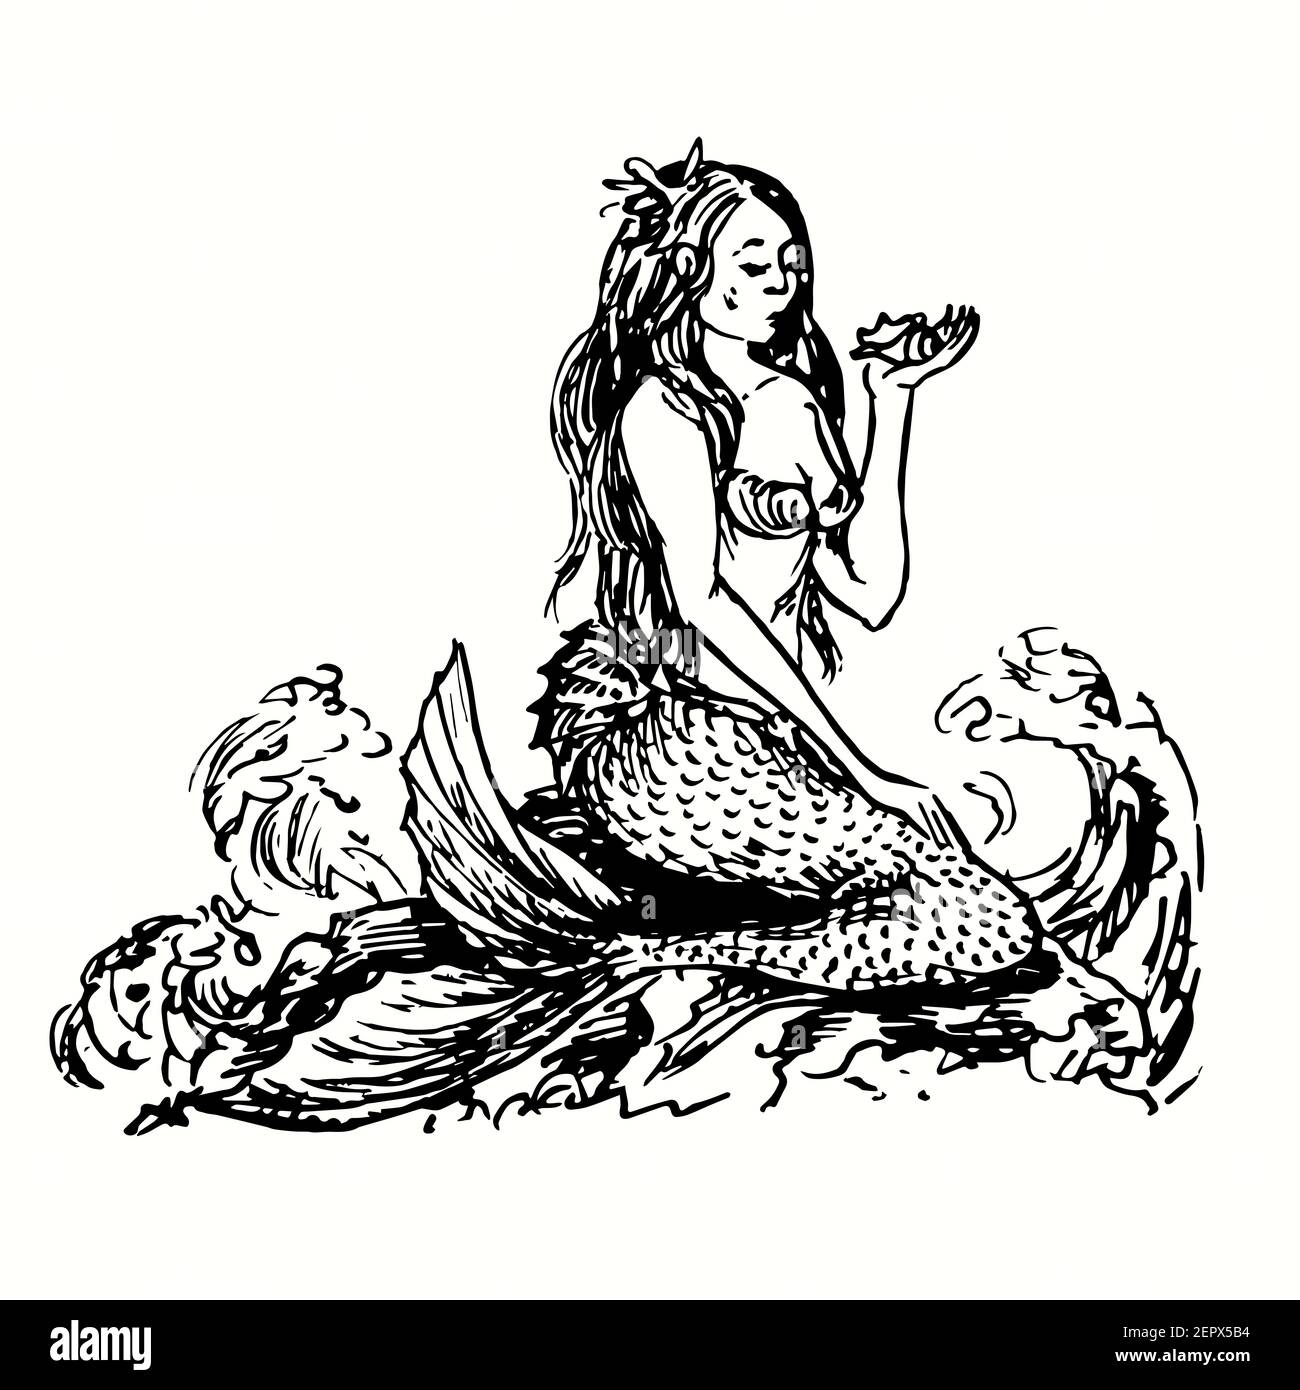 Meerjungfrau, die auf Felsen sitzt und auf Muschel in ihrer Hand schaut. Tusche schwarz-weiß Doodle Zeichnung in Holzschnitt skizzieren Stil. Stockfoto